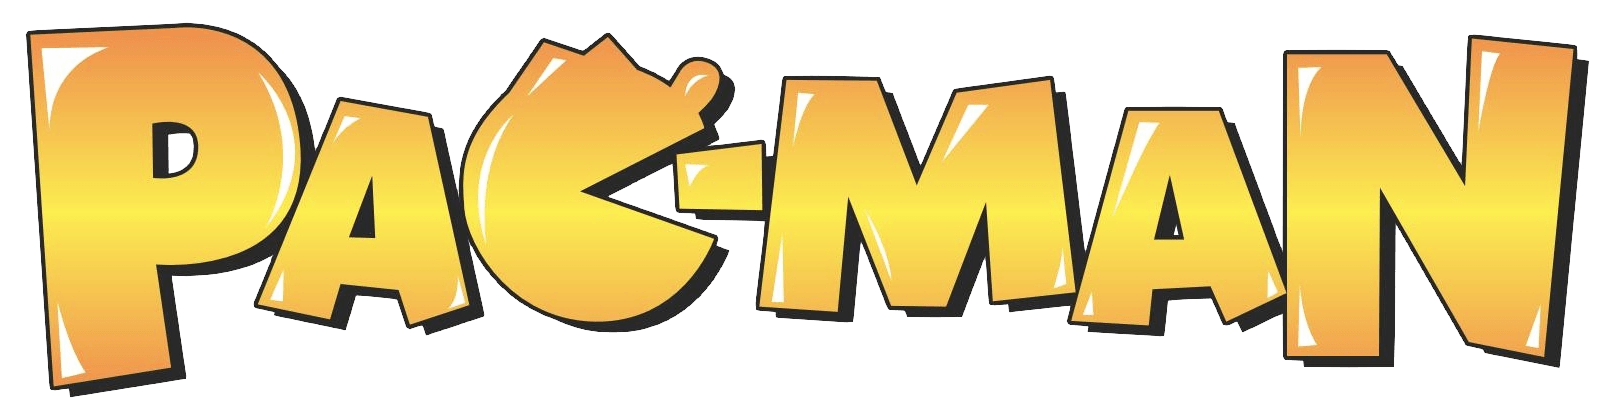 Pacman Logo - Pacman Logo Vector Free Download